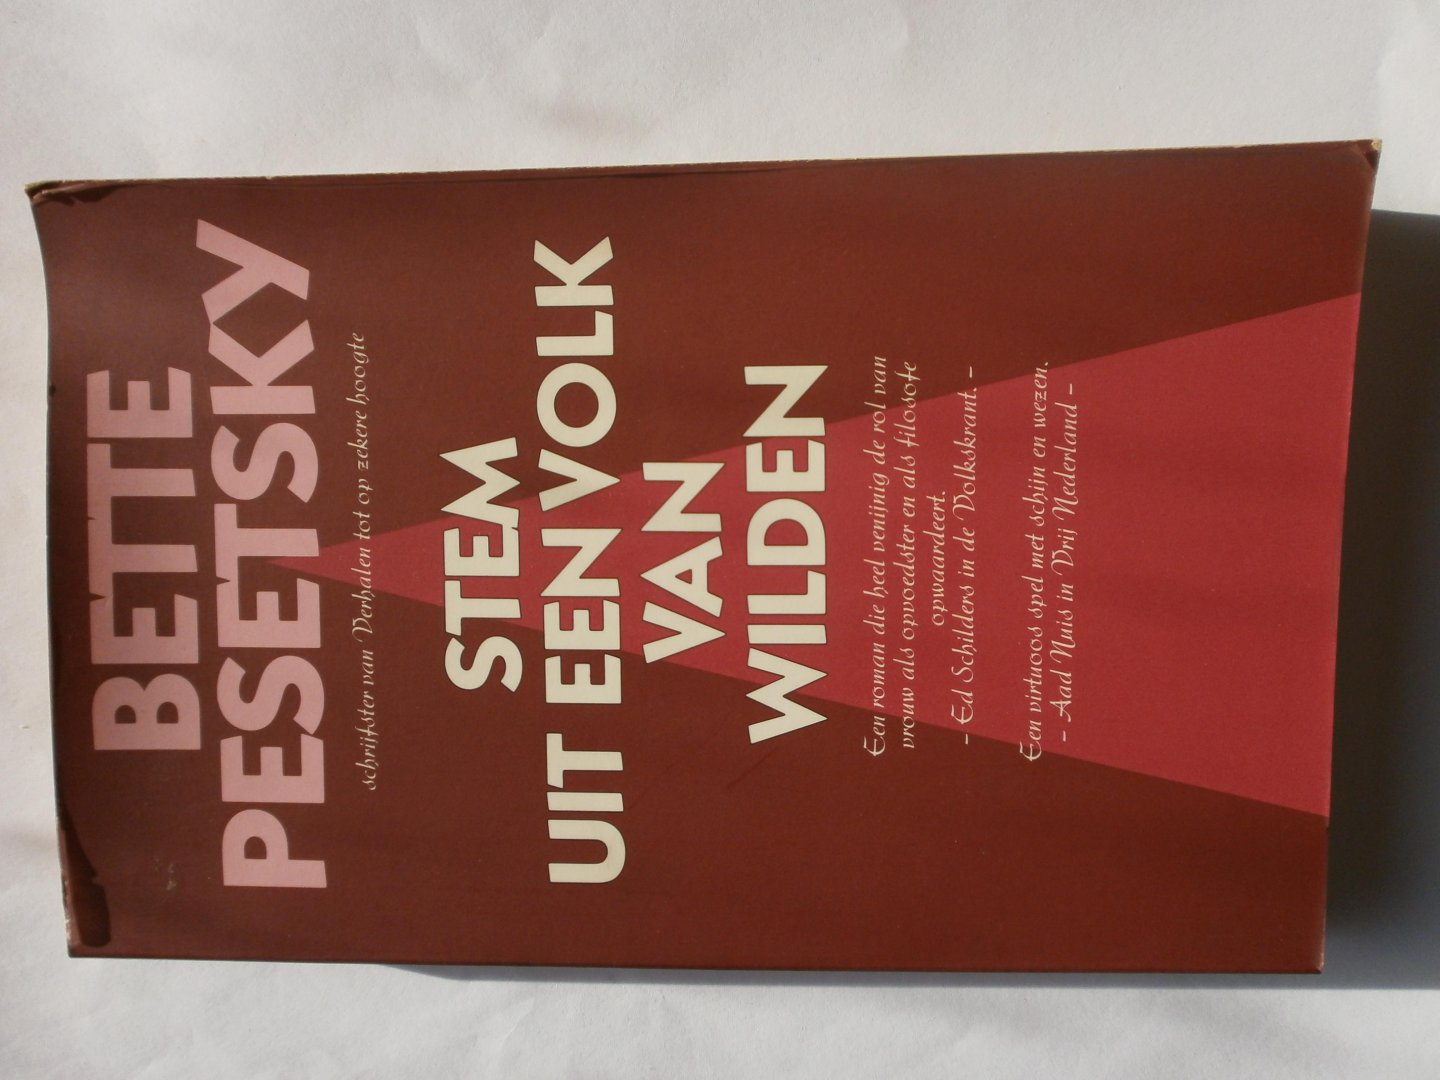 Pesetsky, Bette - Stem uit een volk van wilden